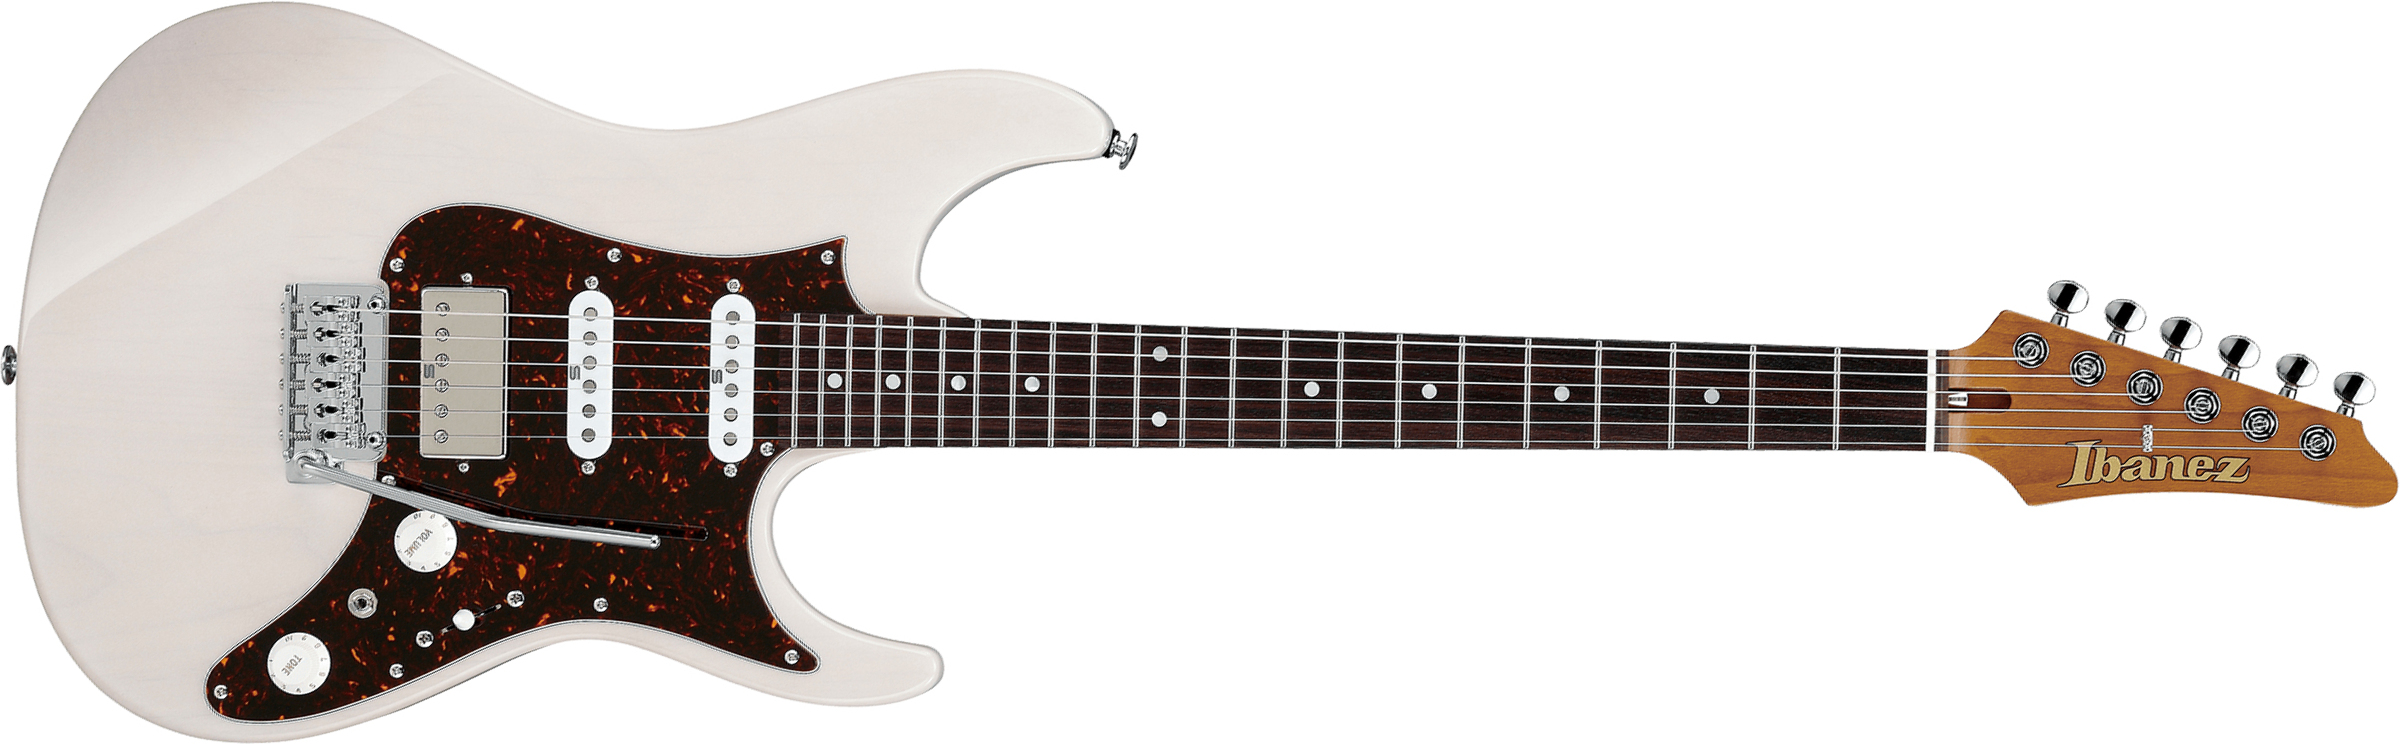 Ibanez Az2204n Awd Prestige Jap Hss Seymour Duncan Trem Rw - Antique White Blonde - Str shape electric guitar - Main picture